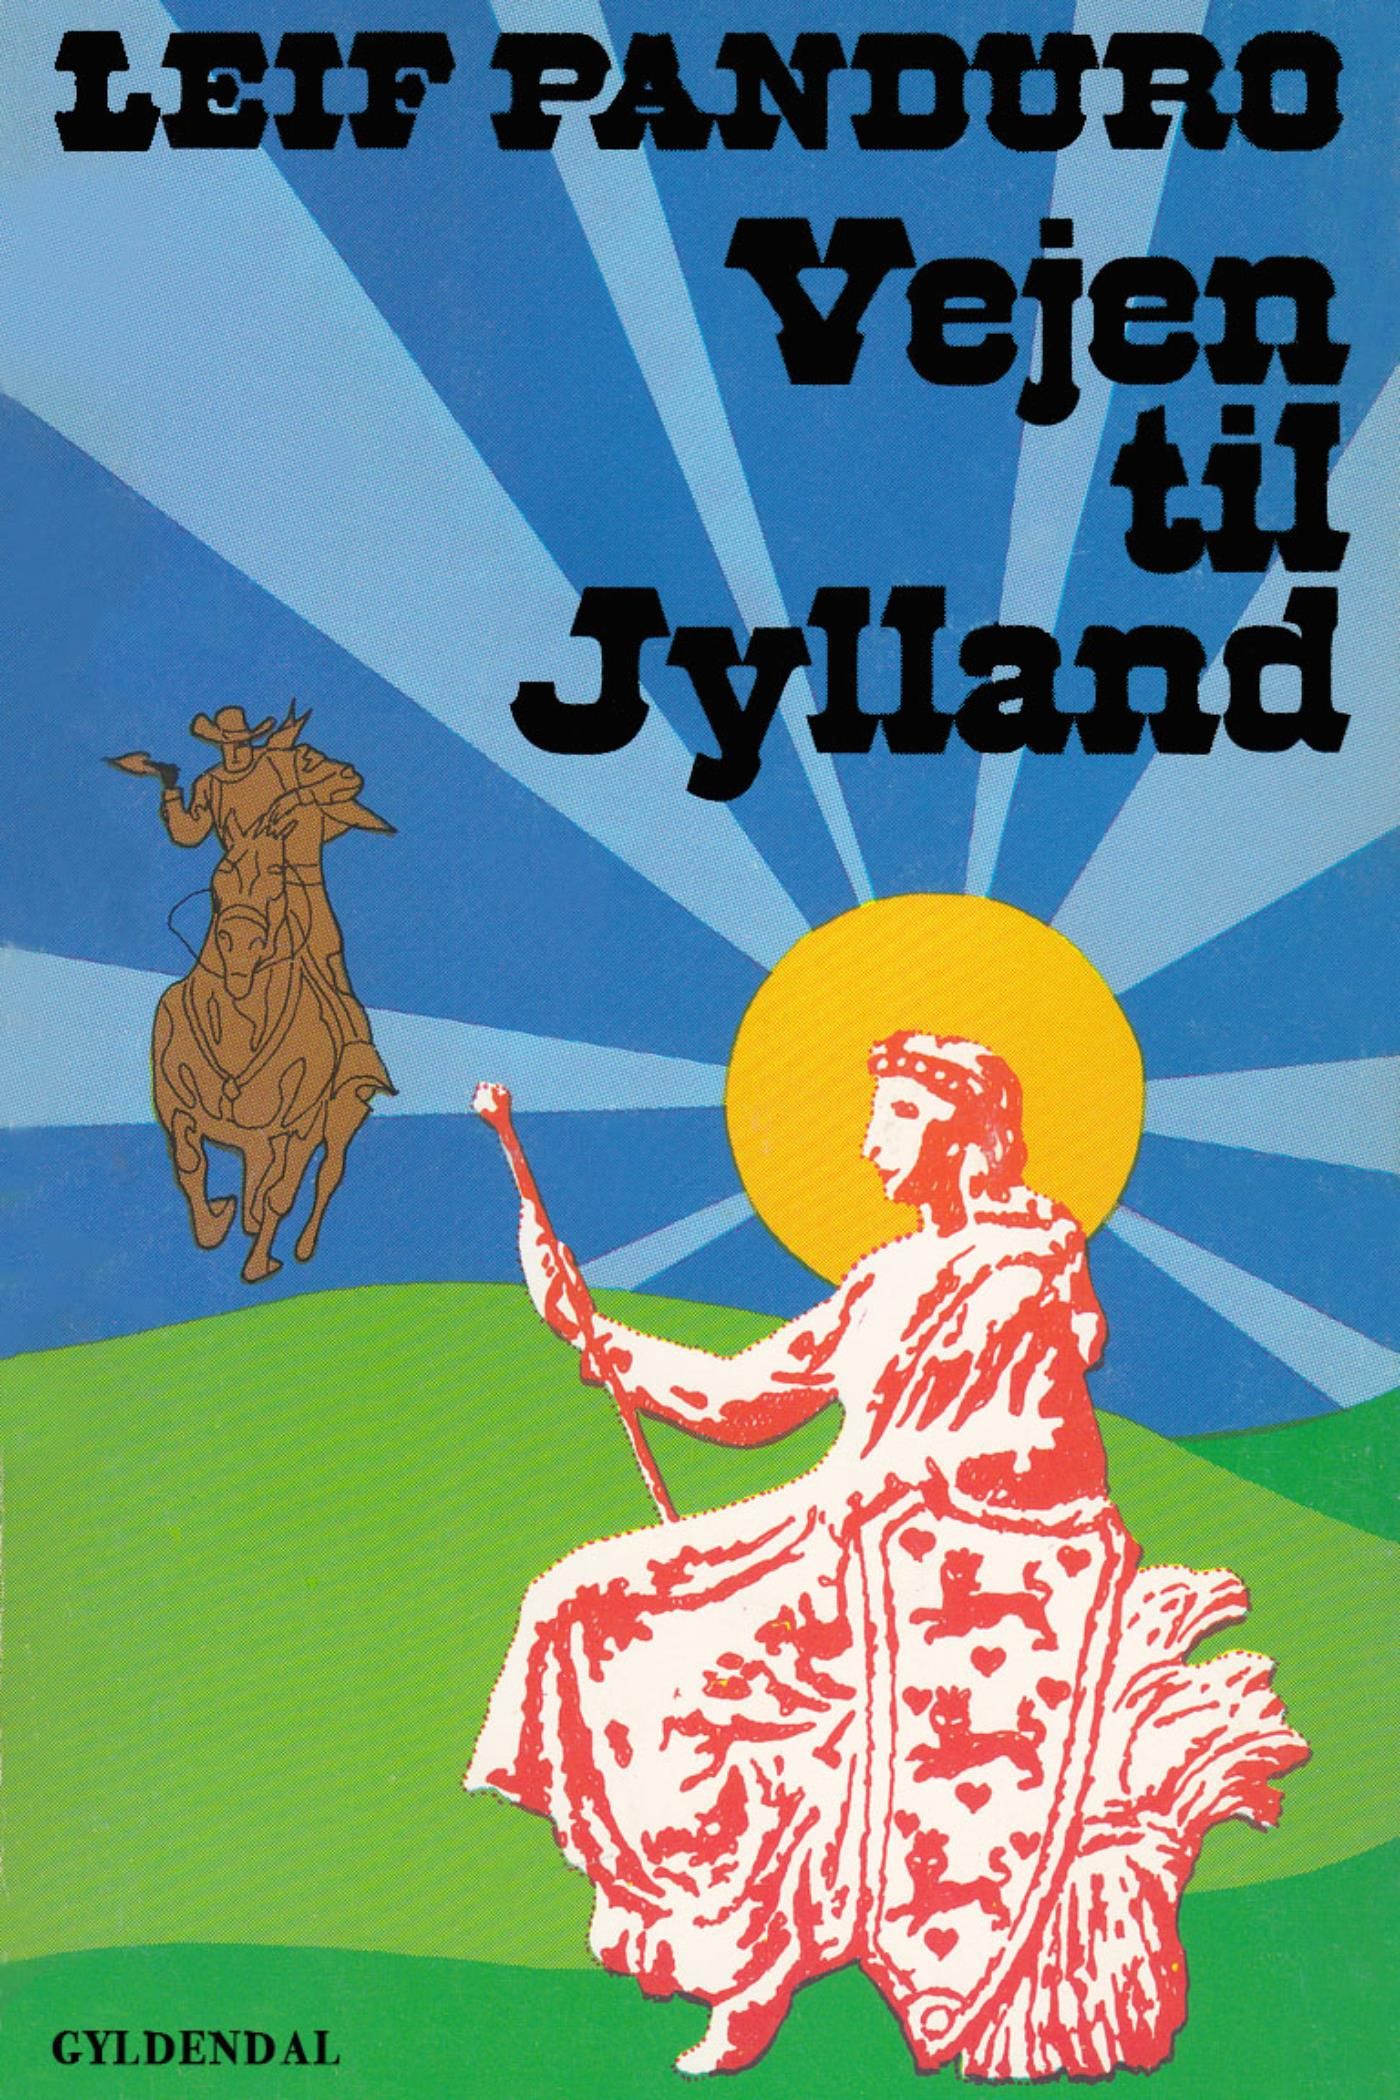 Vejen til Jylland, e-bog af Leif Panduro